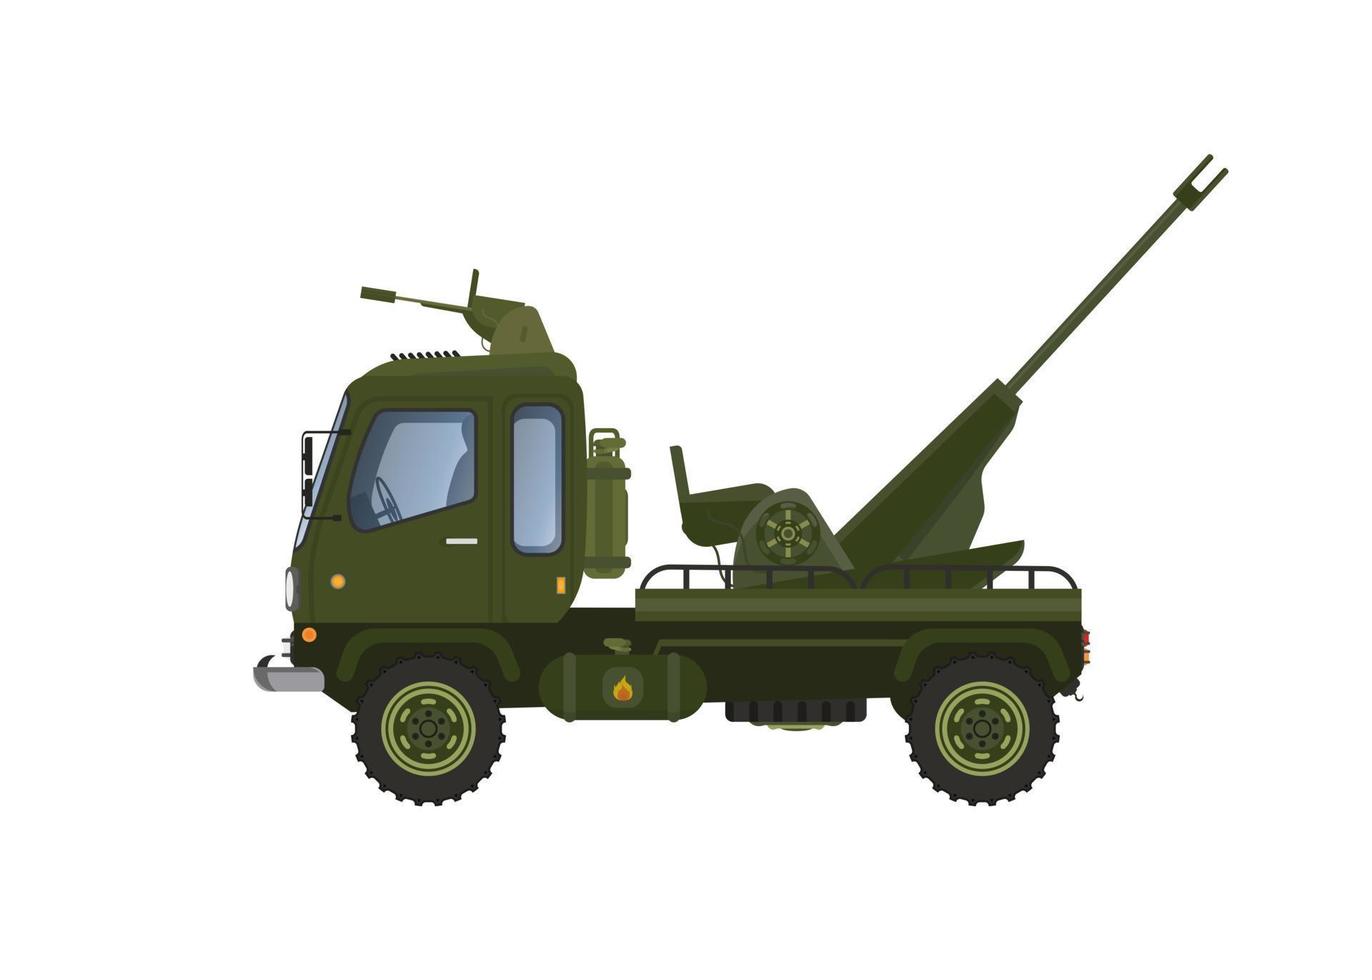 illustration vectorielle de voiture de lanceur de missiles militaires. marqué avec un motif à rayures militaires vertes. regarde en perspective. avec un fond blanc, isolé. vecteur